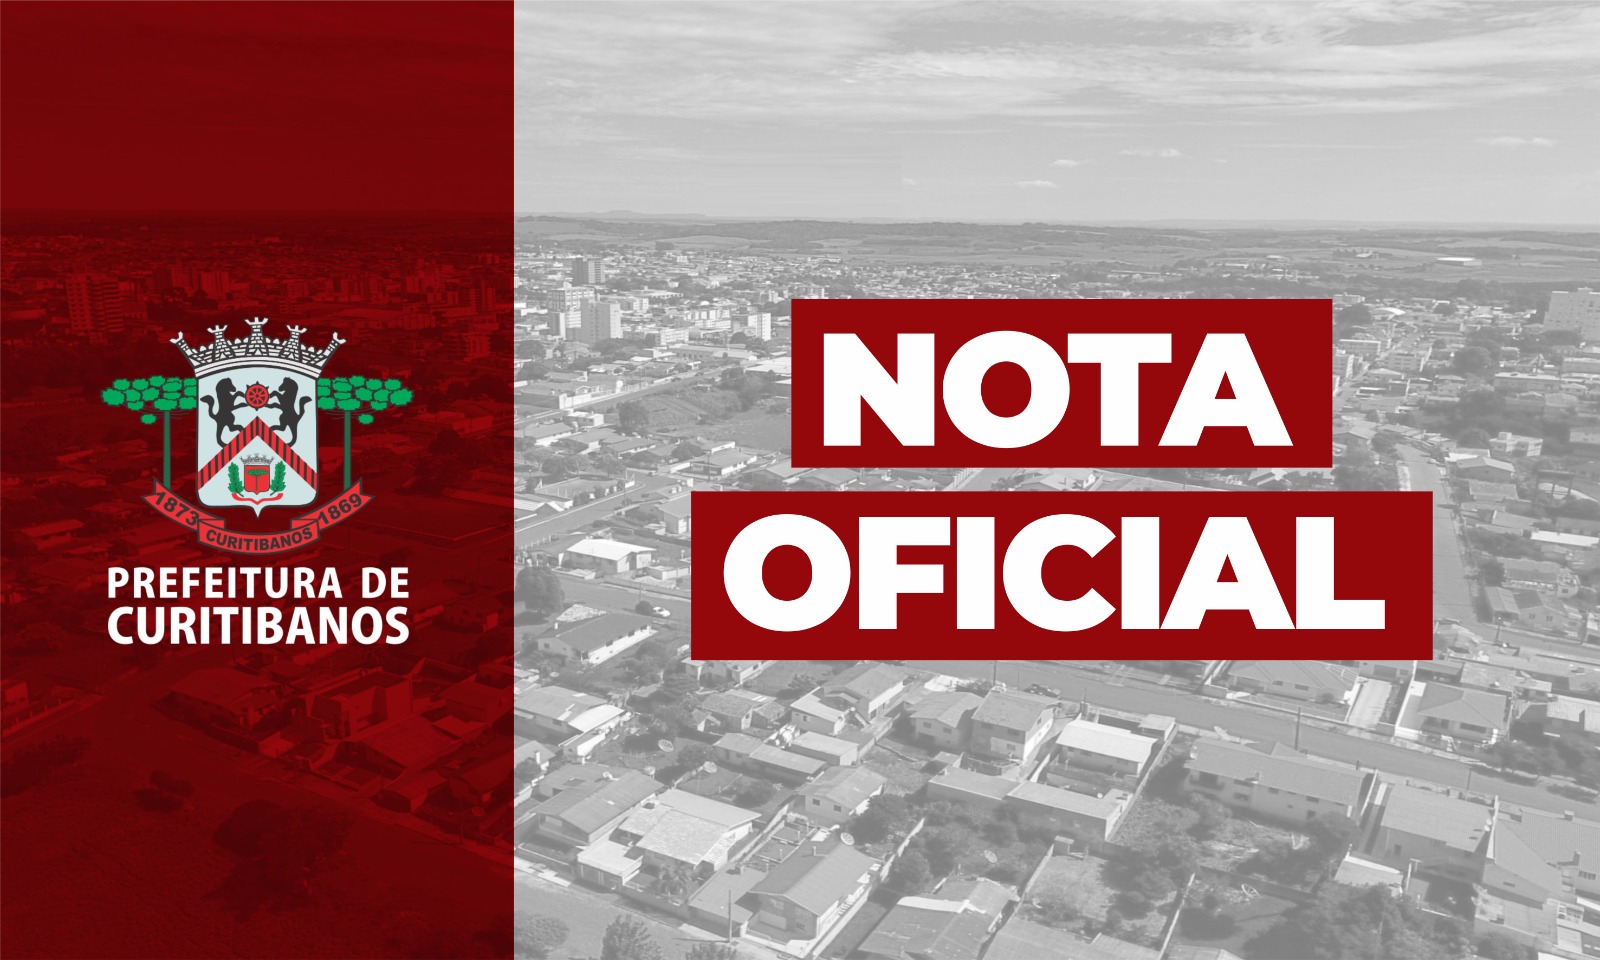 Curitibanos será sede dos Joguinhos Abertos de Santa Catarina - Prefeitura  de Curitibanos